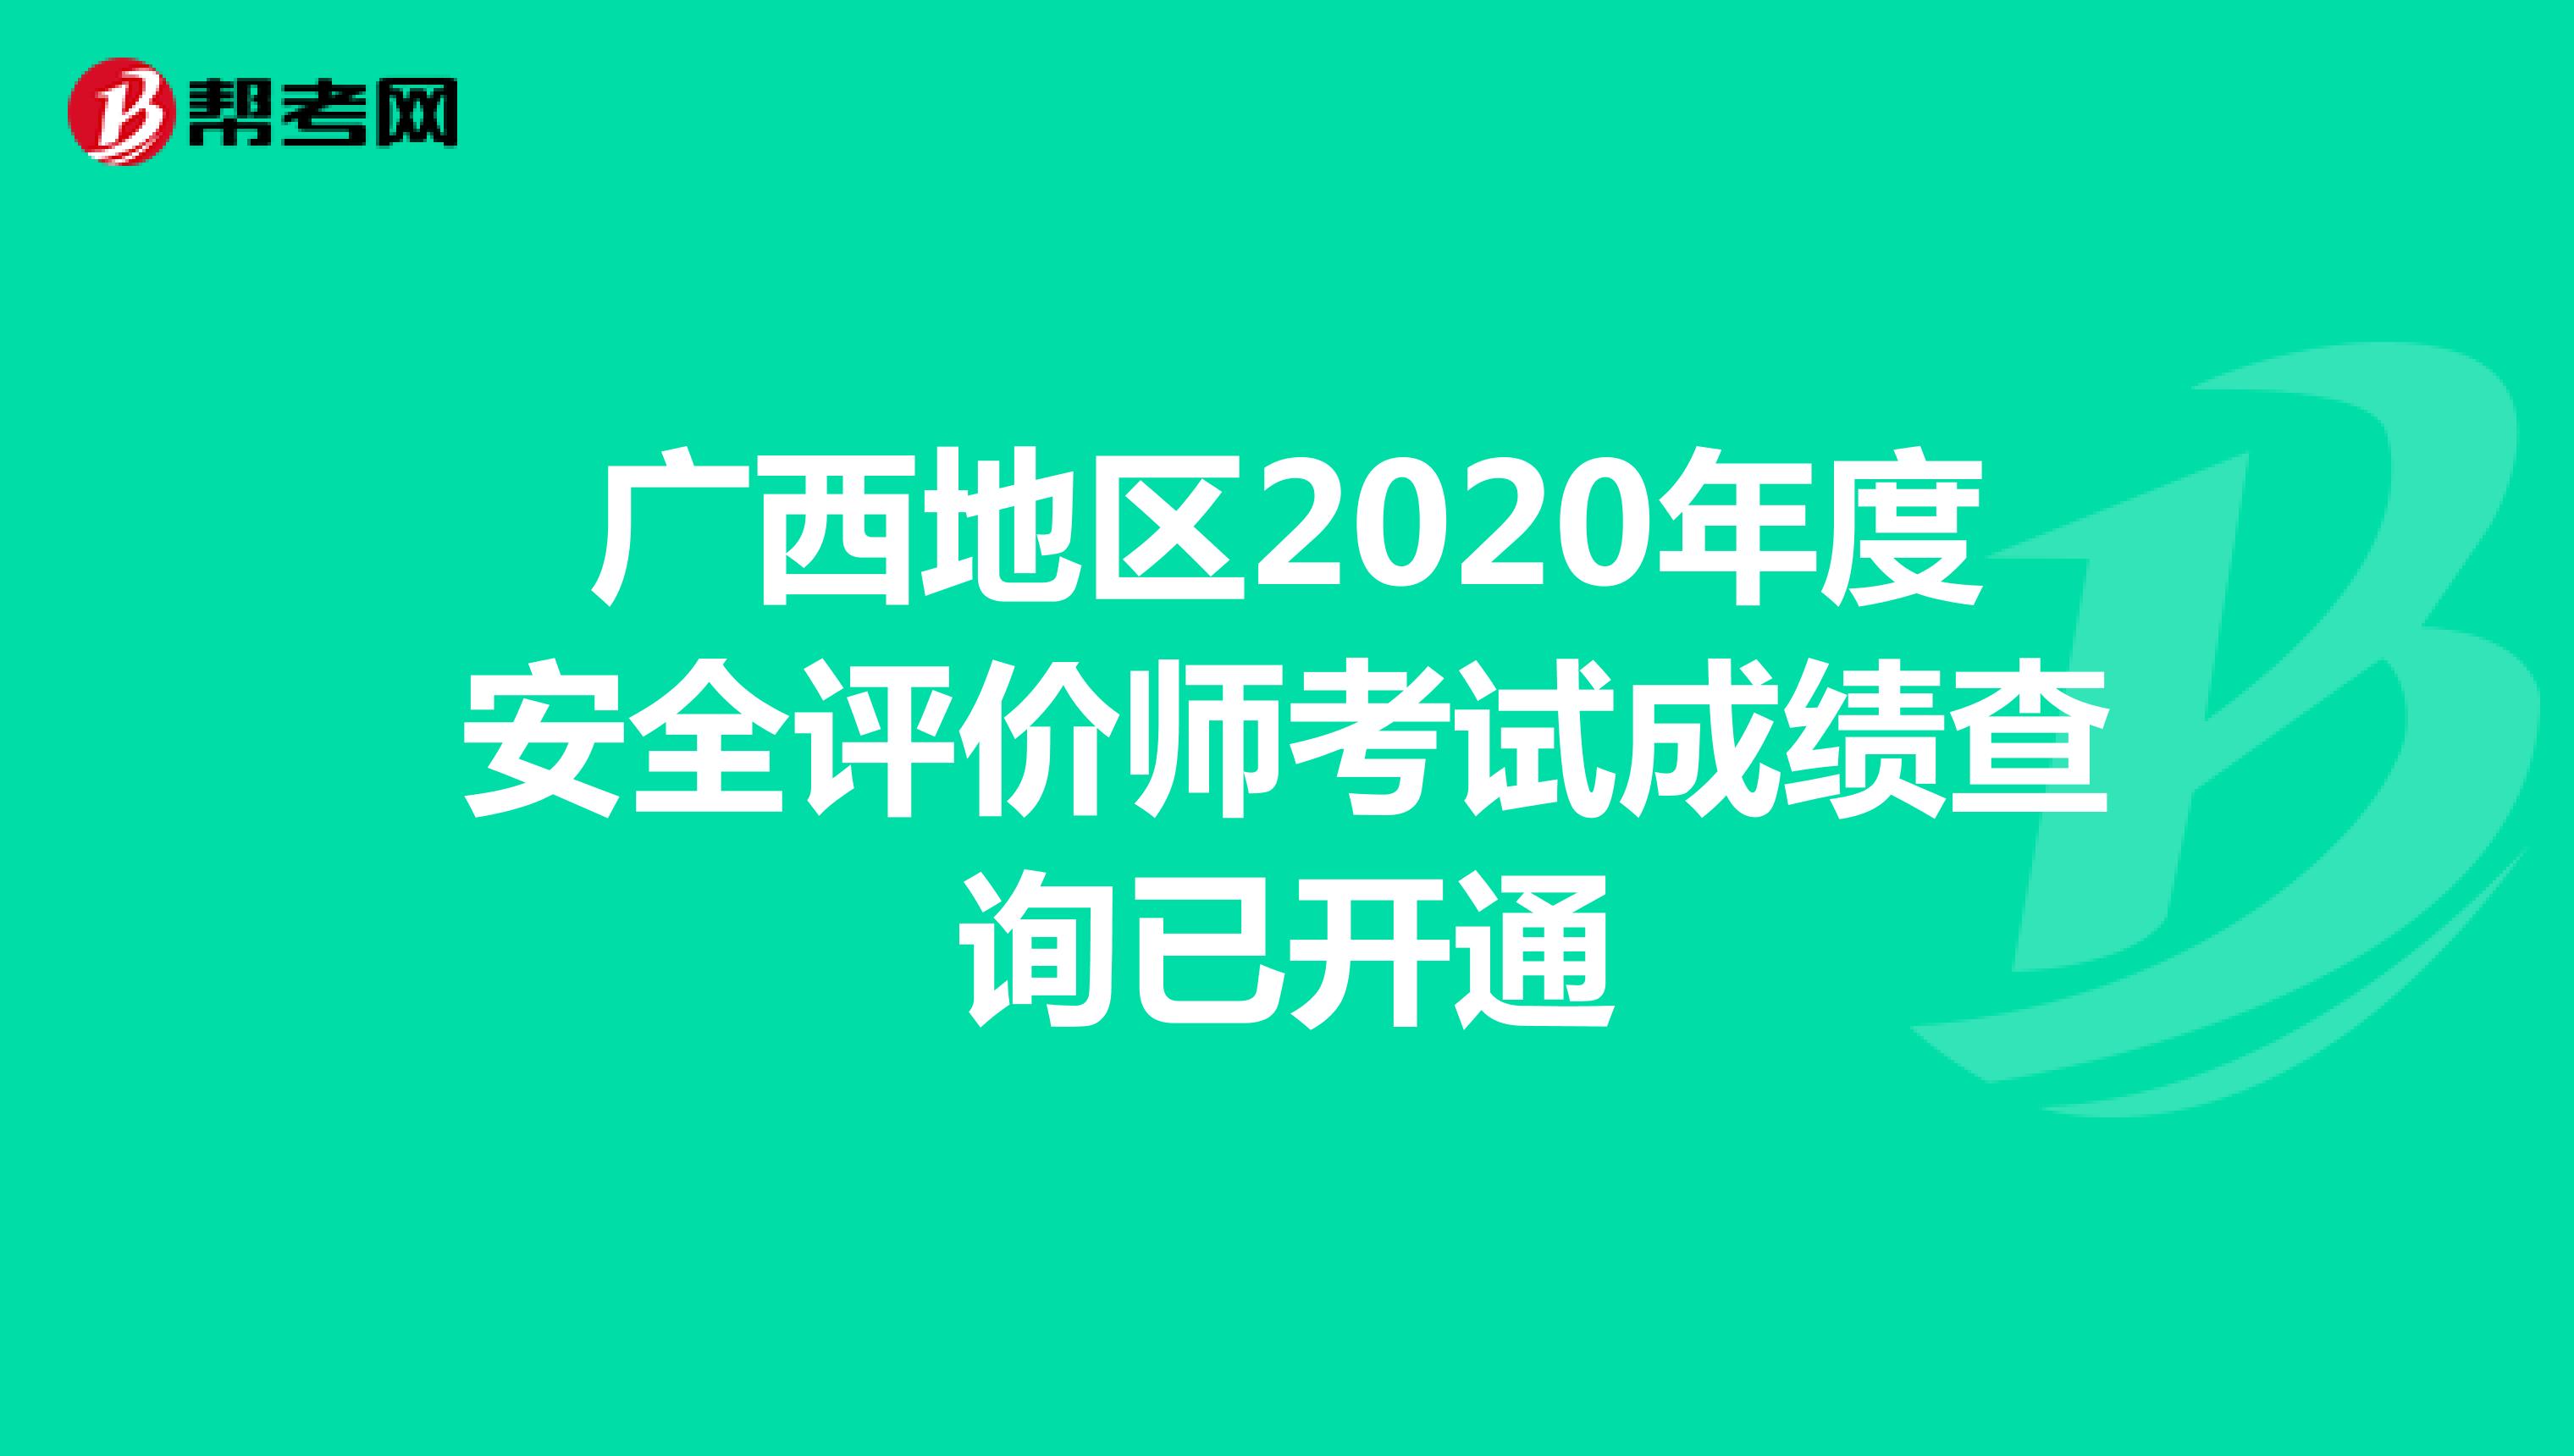 广西地区2020年度安全评价师考试成绩查询已开通